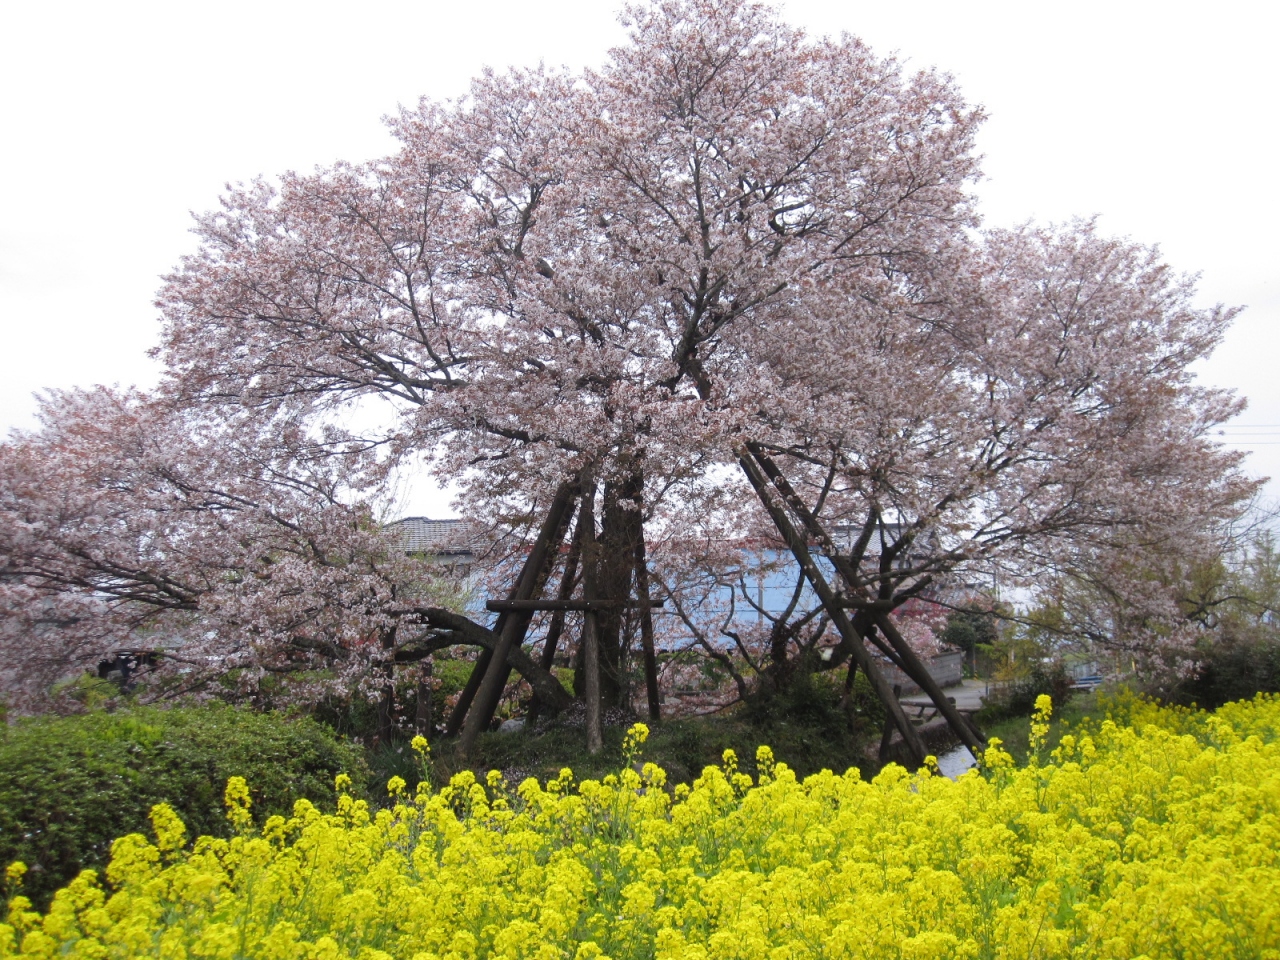 富士宮狩宿の下馬桜を見に行って来ました 富士宮 静岡県 の旅行記 ブログ By Ooうさぎさん フォートラベル